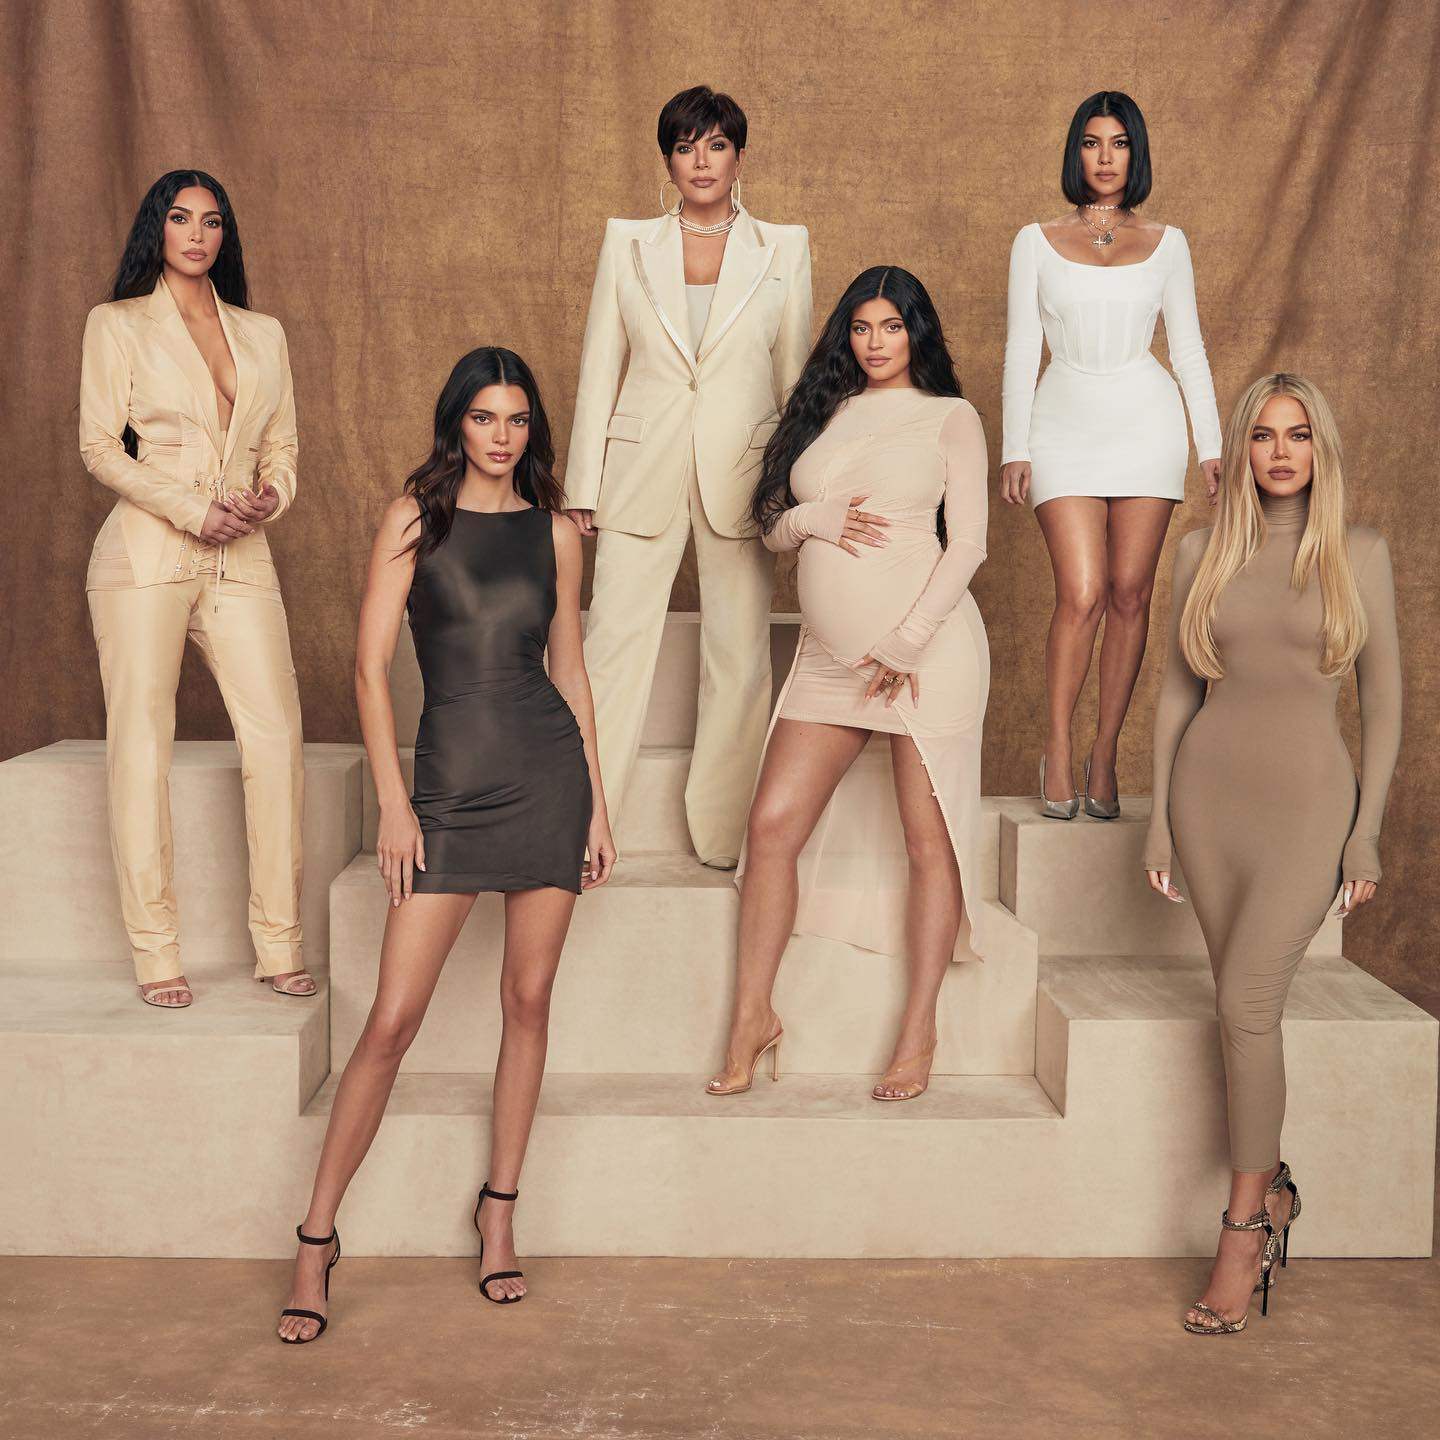 Which Kardashian is wealthiest?